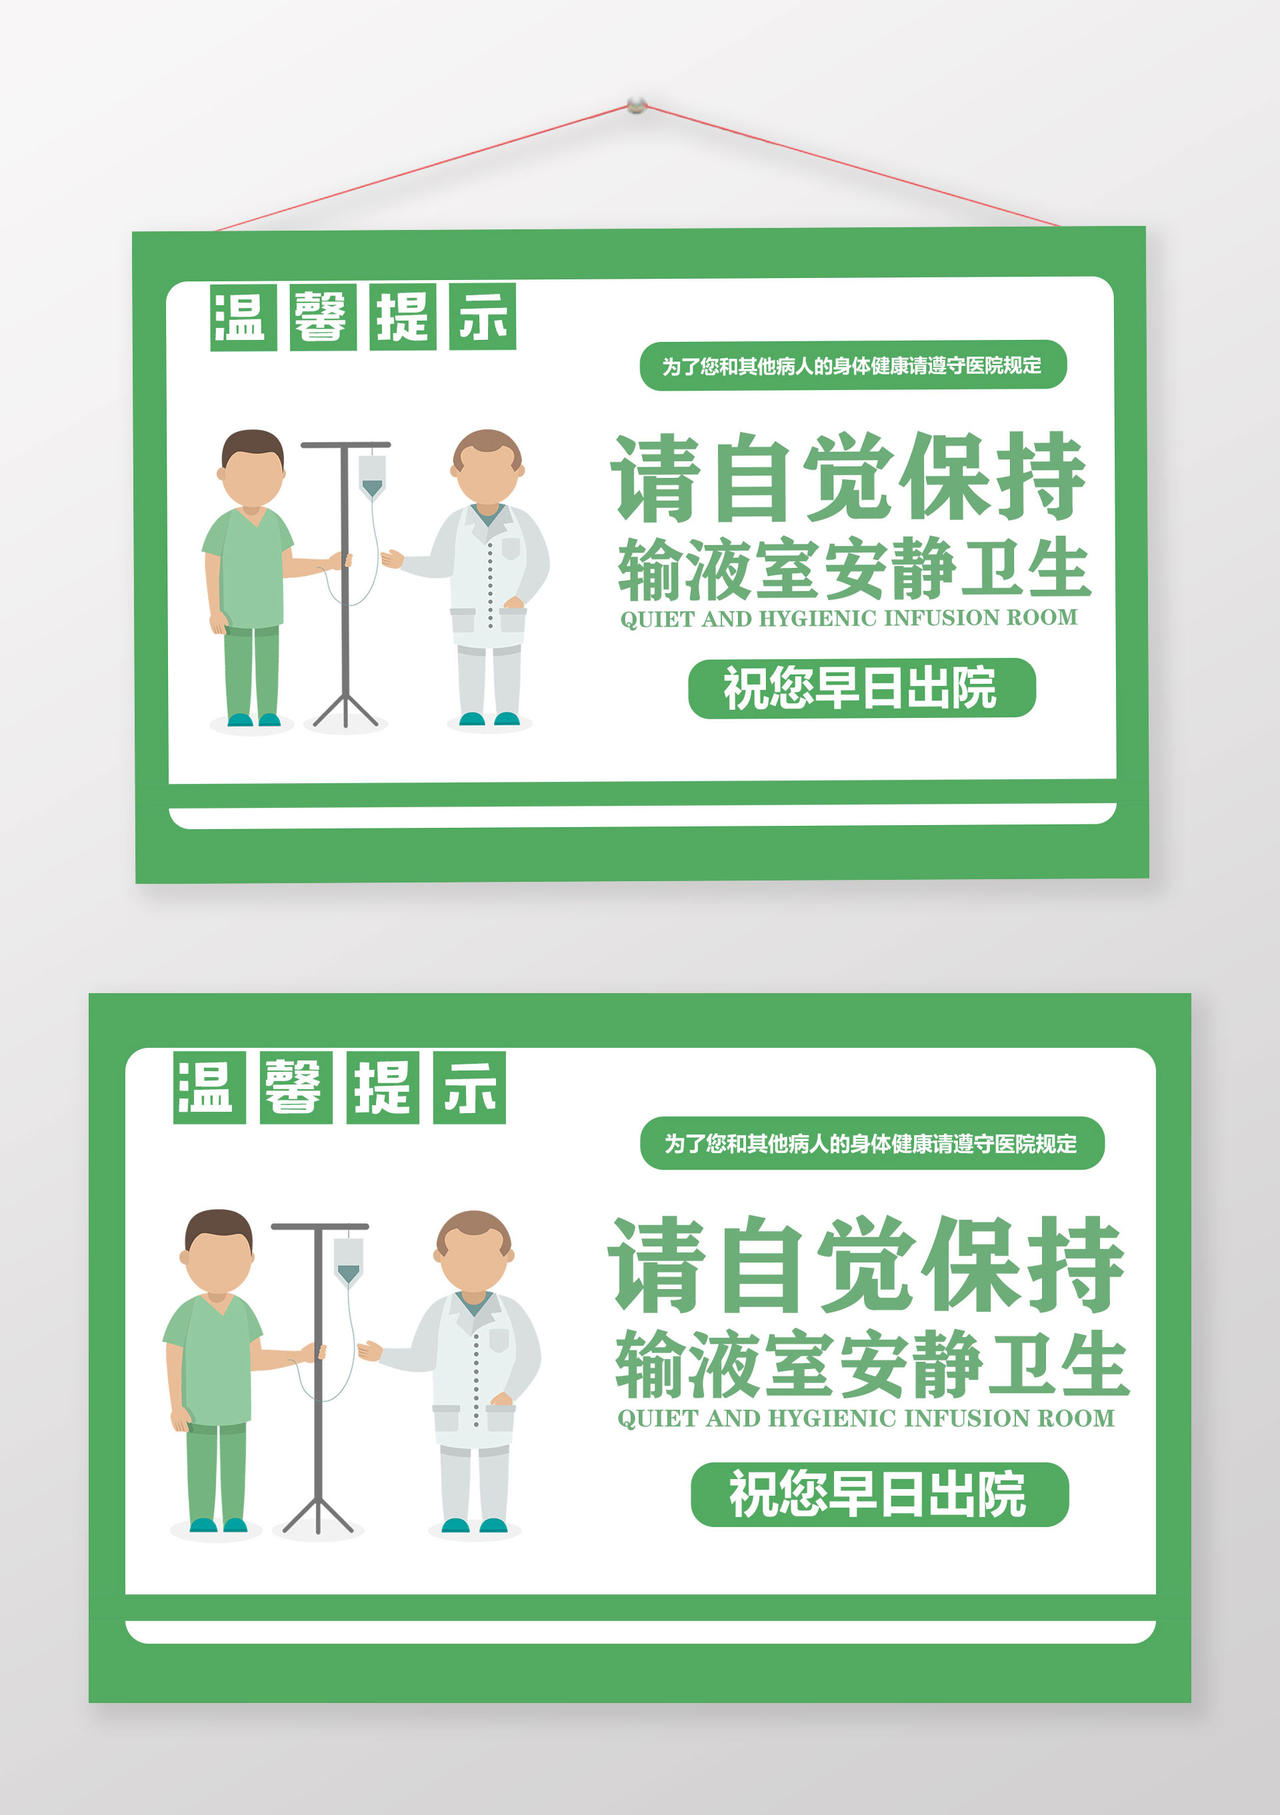 绿色卡通请自觉保持输液室安静卫生医院温馨提示提示牌